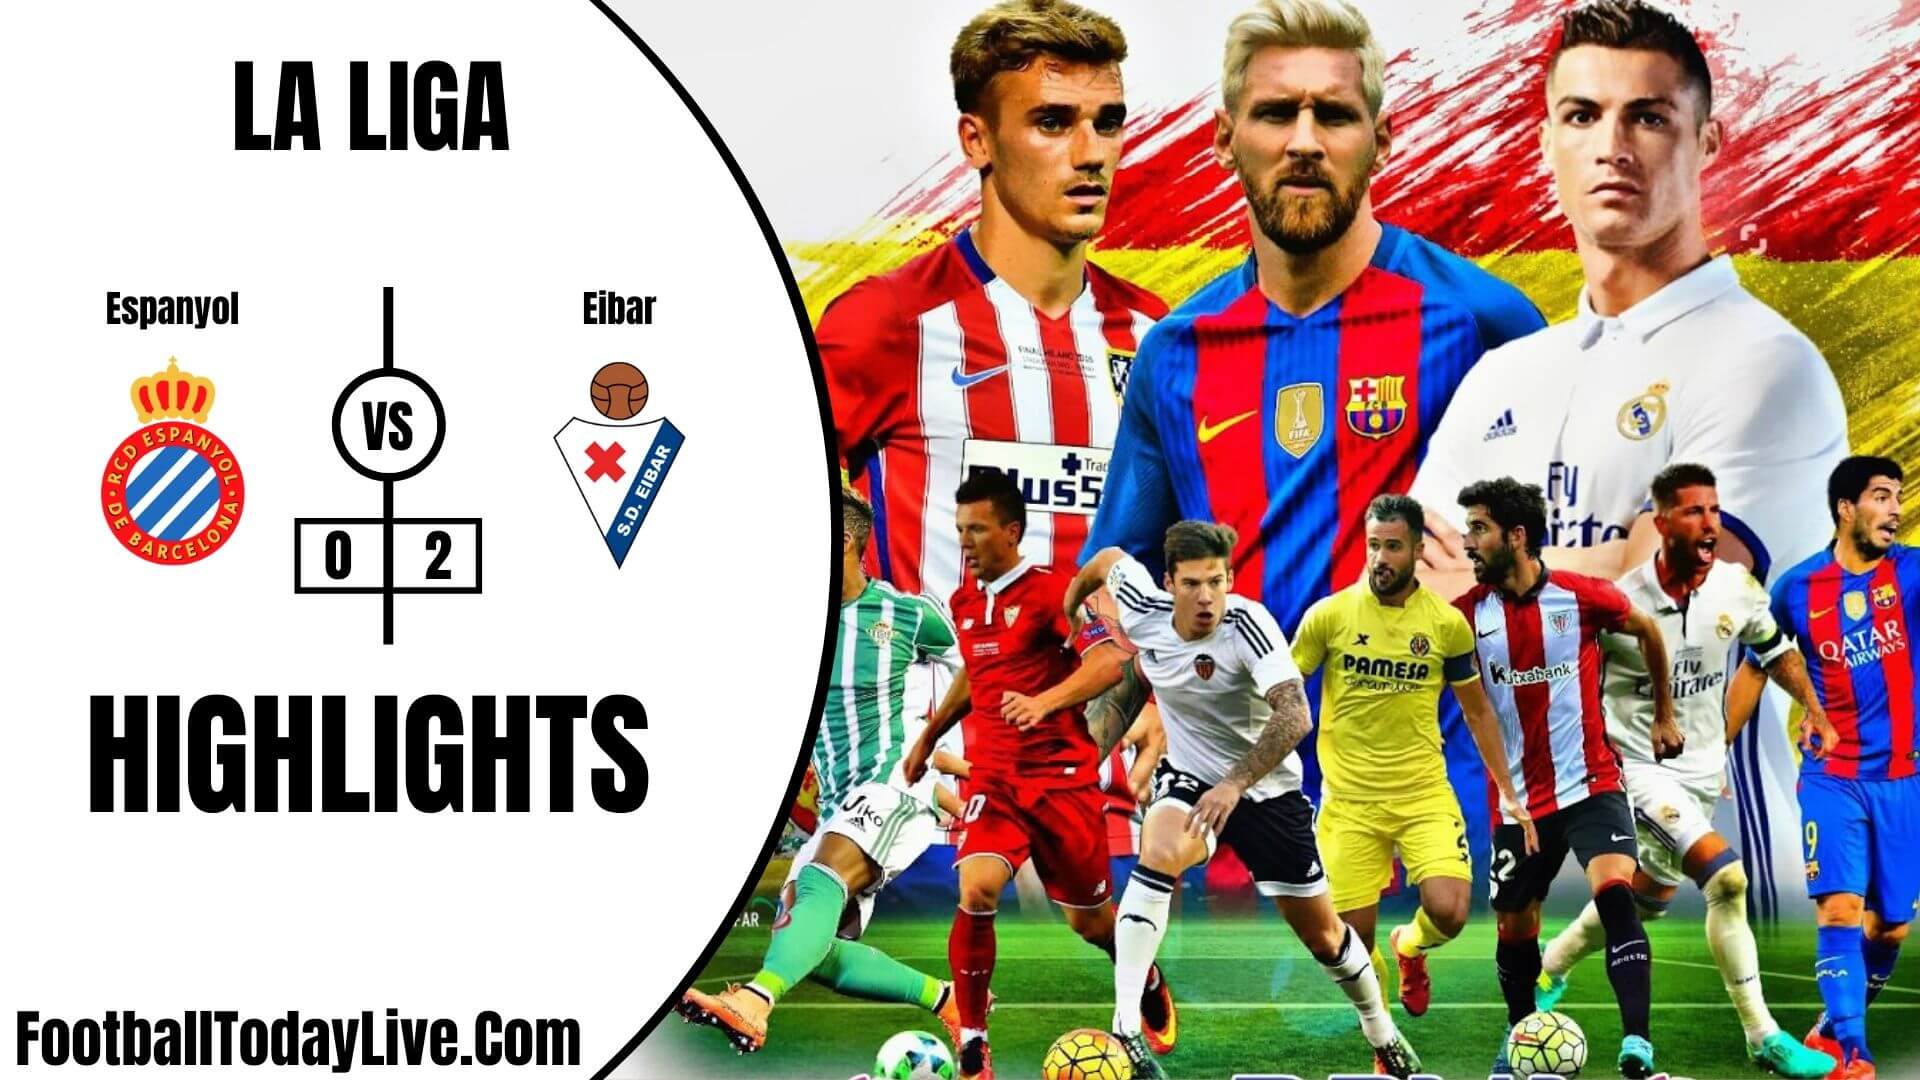 Espanyol Vs Eibar Highlights 2020 La Liga Week 36